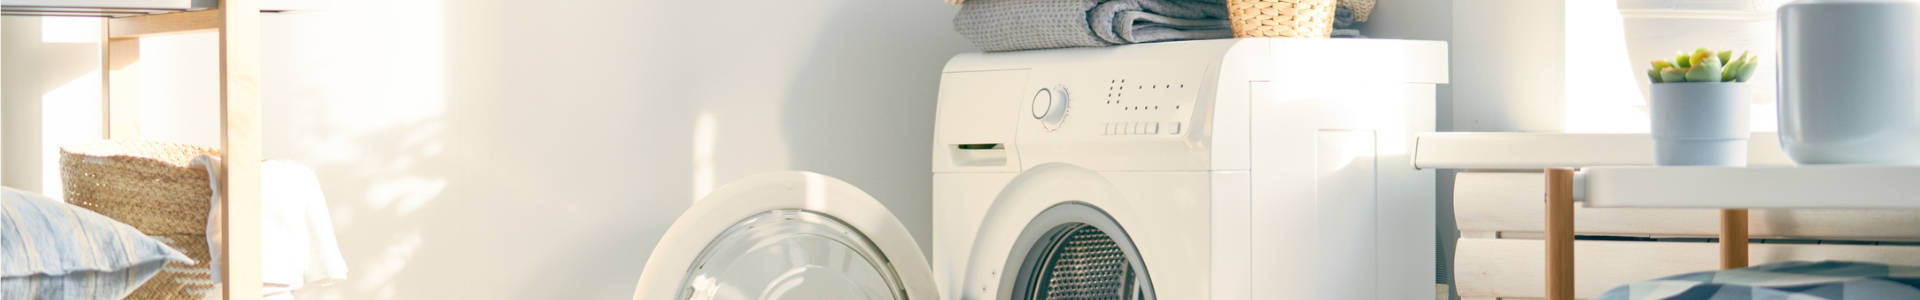 Alte waschmaschine - Die Produkte unter der Menge an Alte waschmaschine